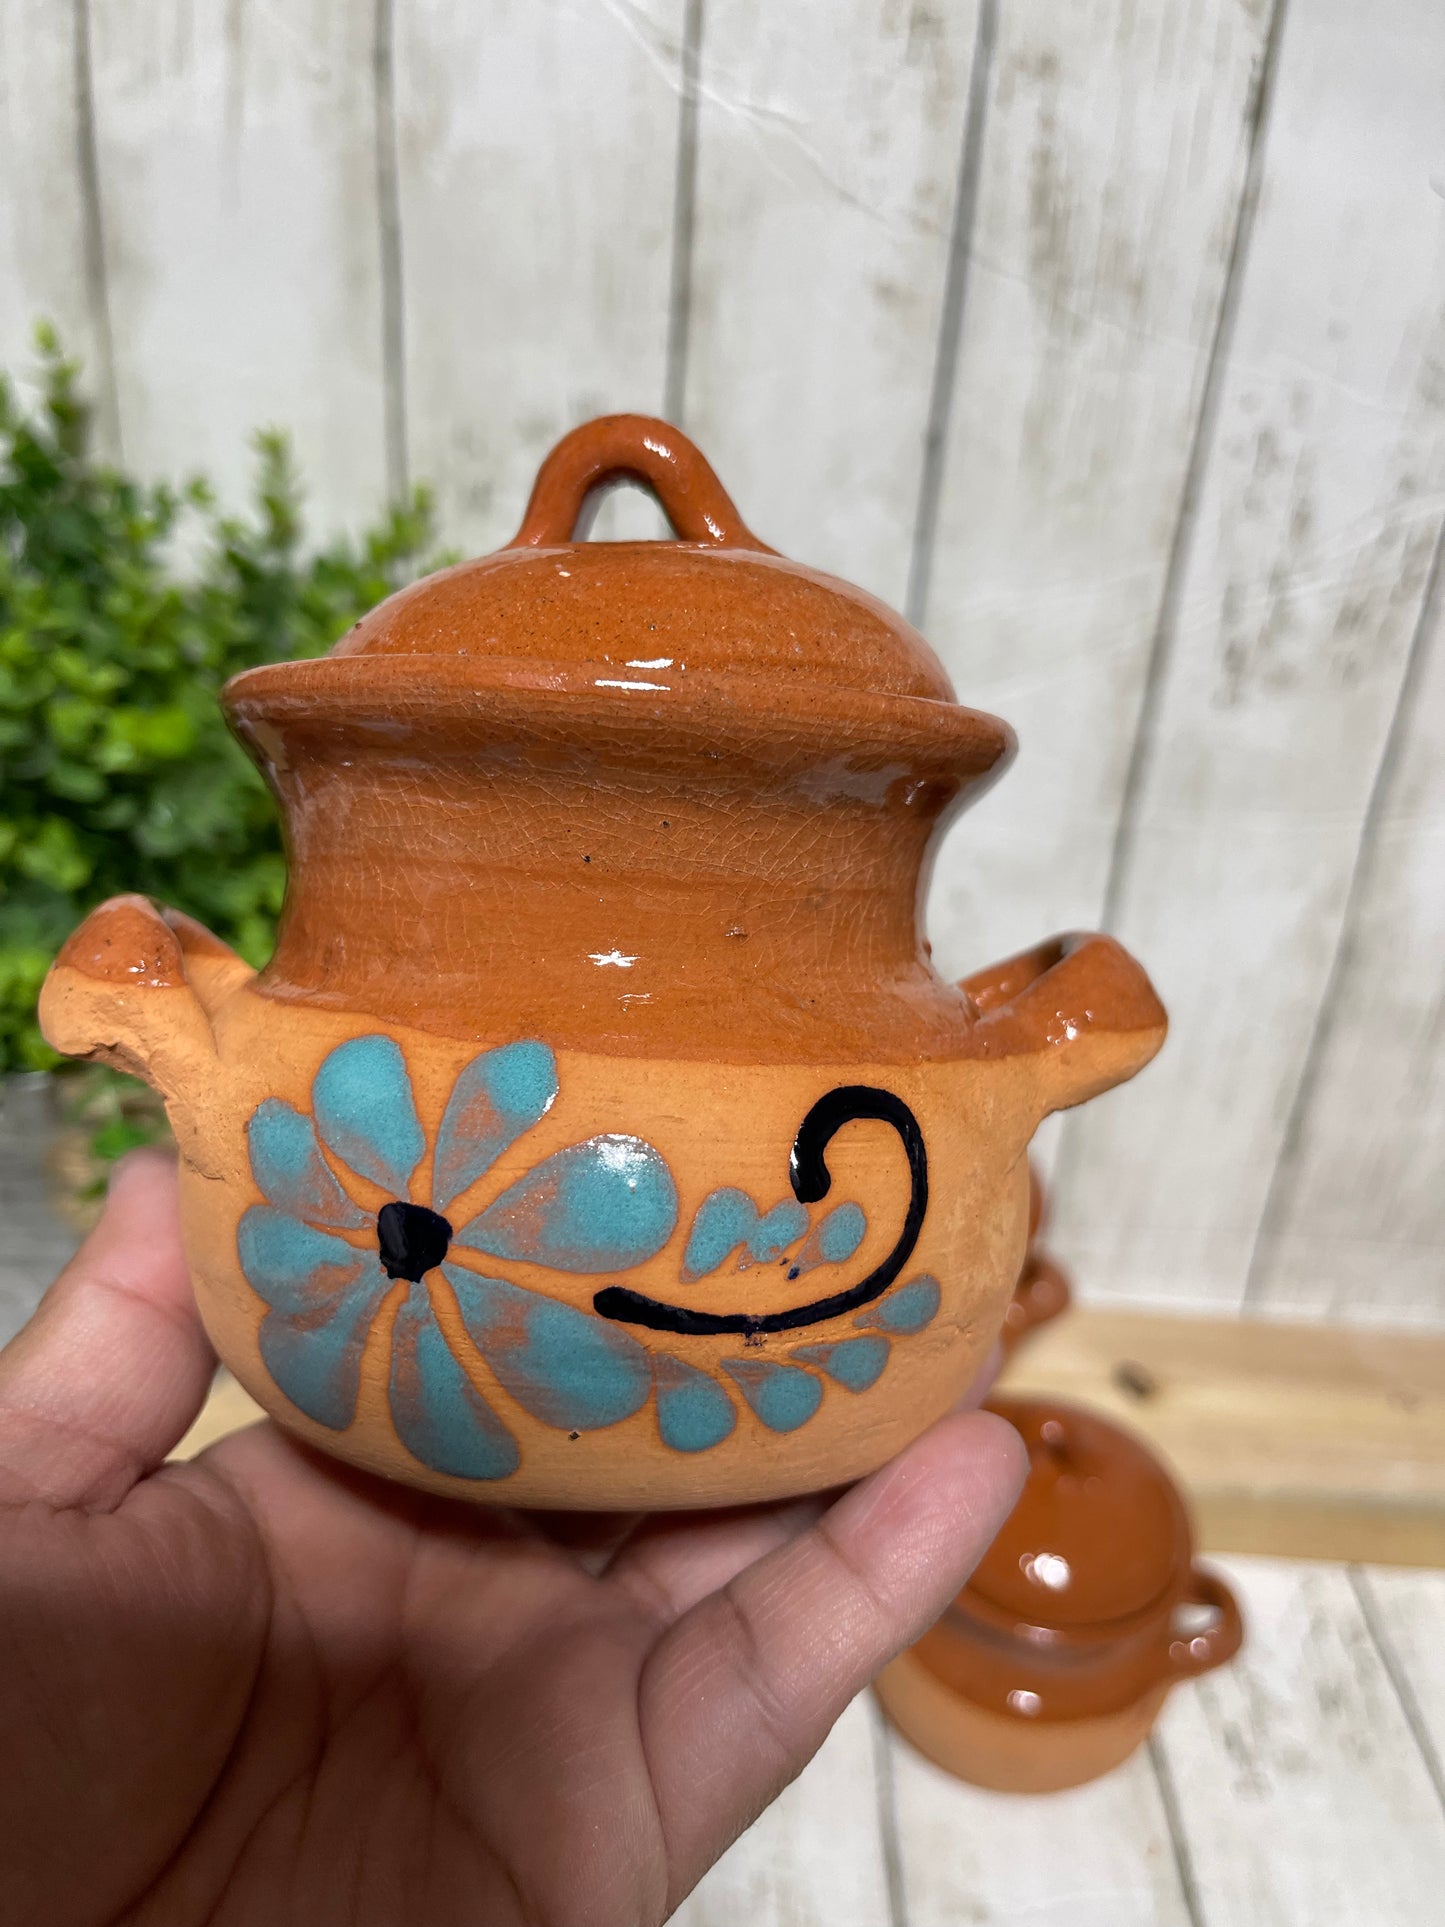 Terracotta mini bean pot/barro de Puebla mini ollita frijolera/barro artesanal/mini coffee pot